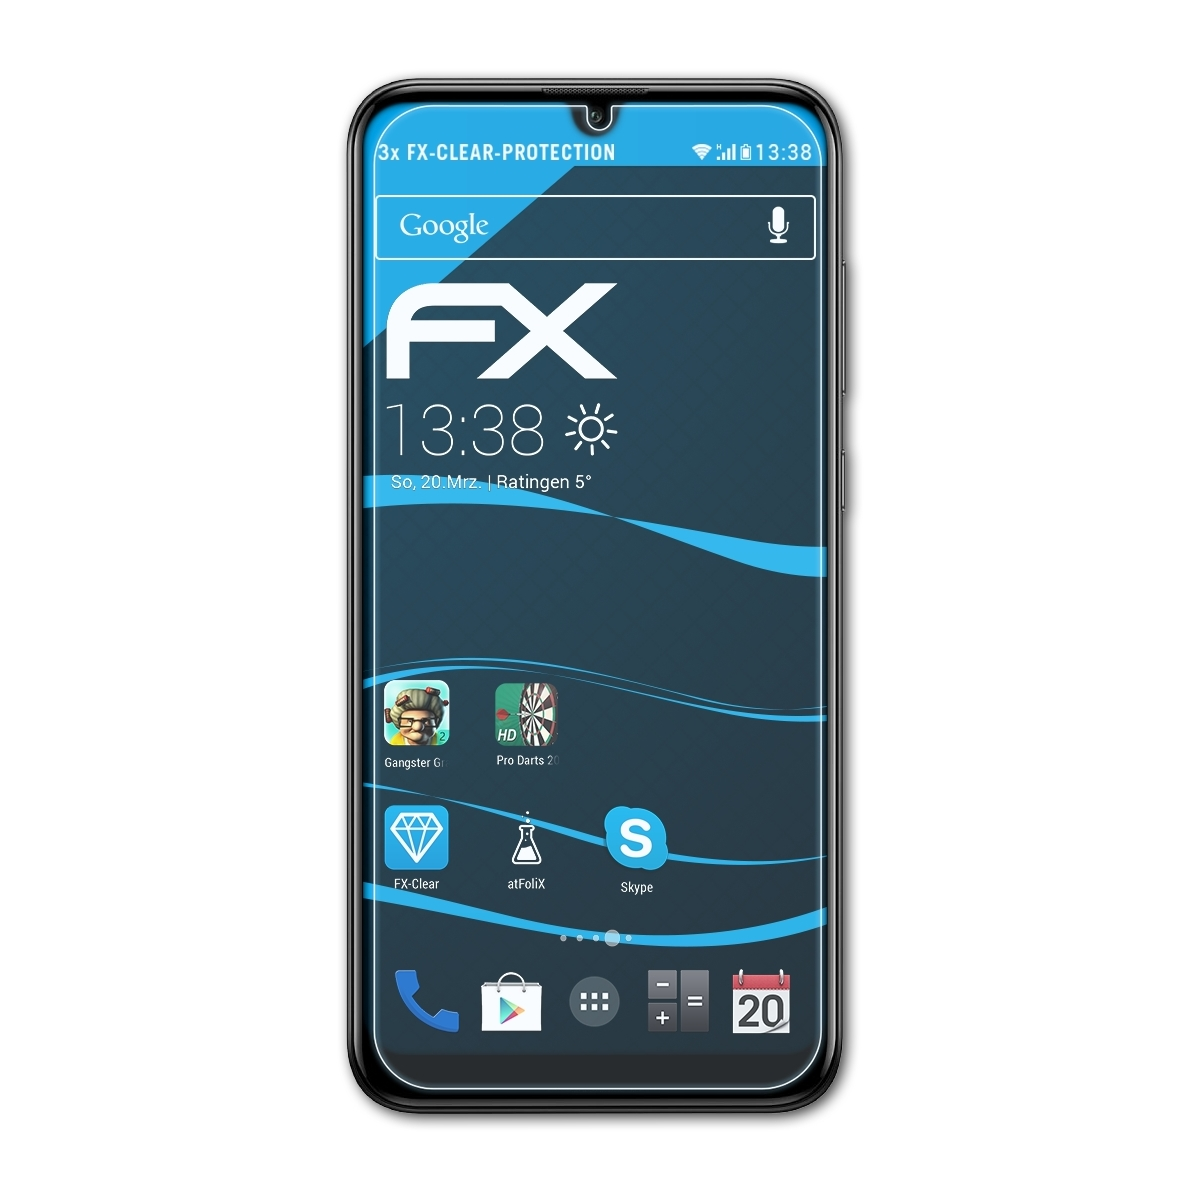 ATFOLIX 3x FX-Clear Huawei 2019) Displayschutz(für Y7